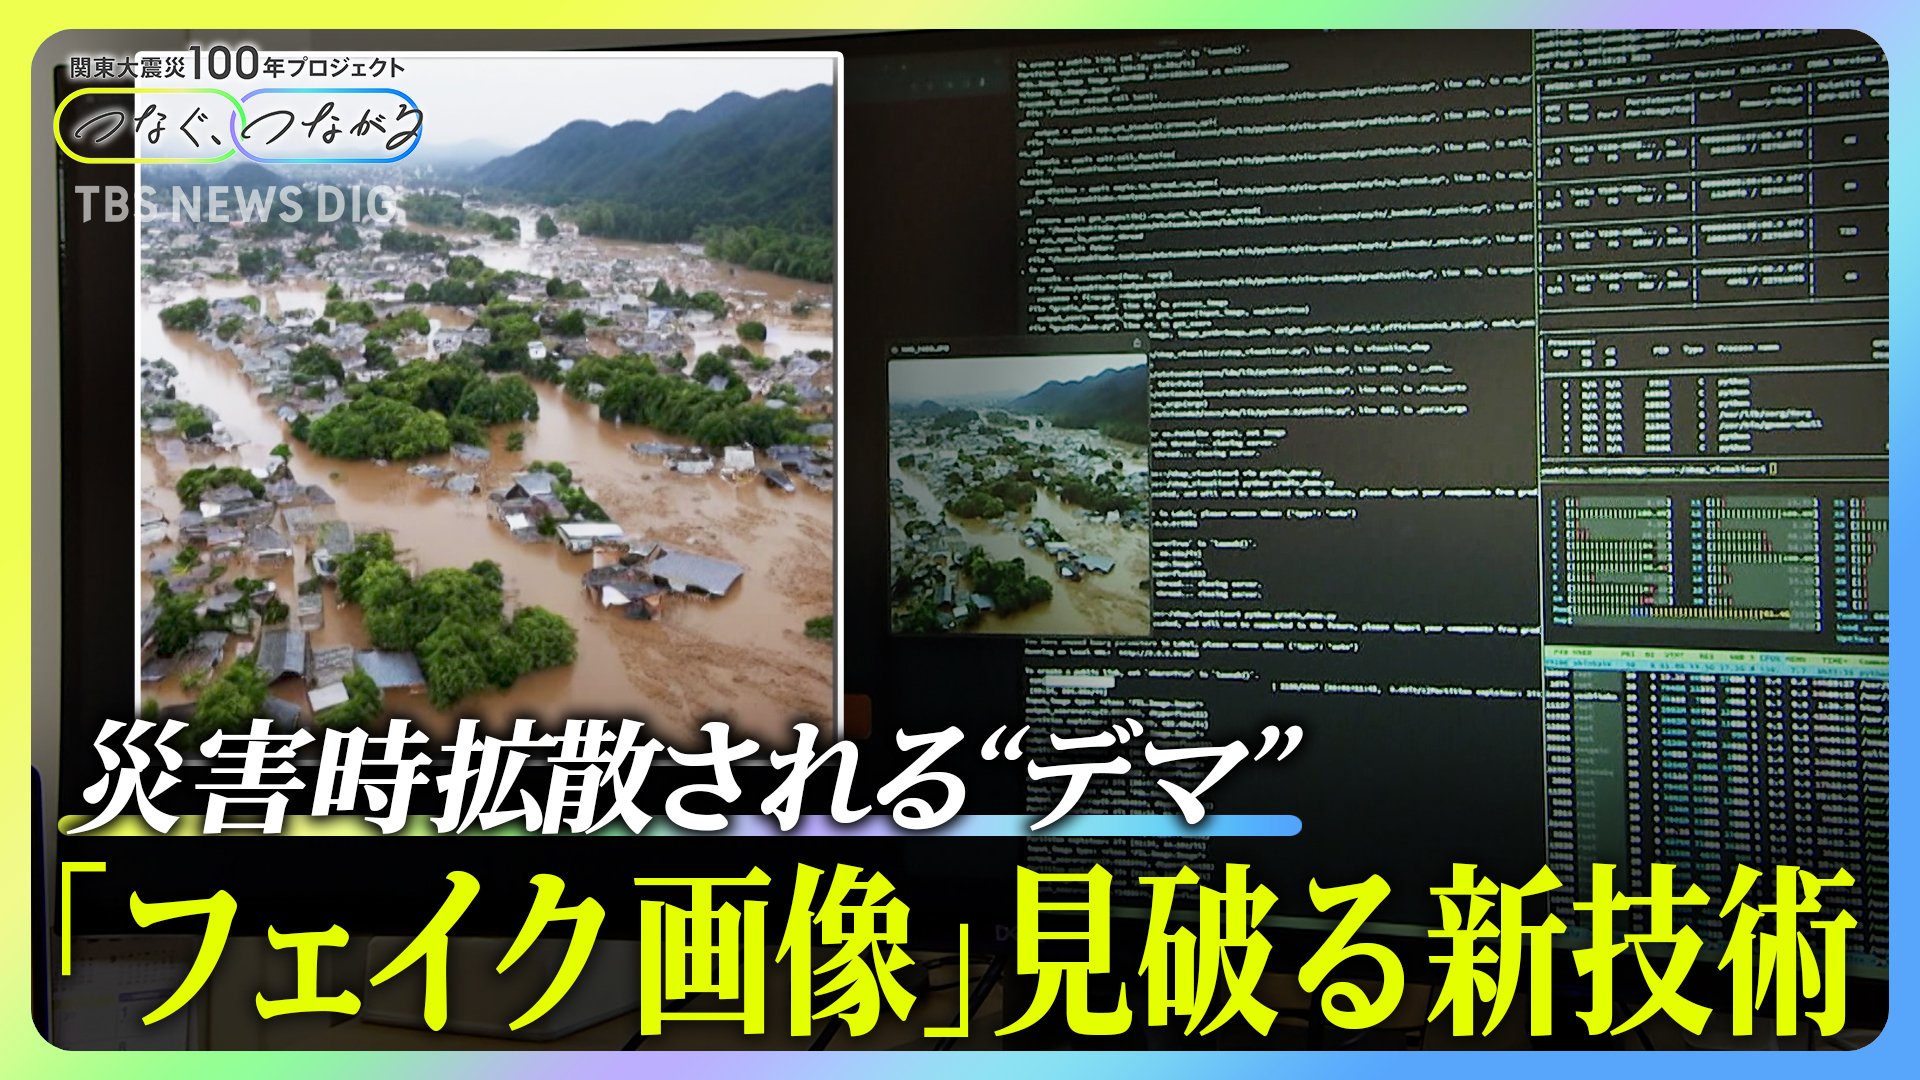 「静岡の水害、マジで悲惨すぎる」→AIニセ画像だった　フェイクどう見破る？技術開発の最前線